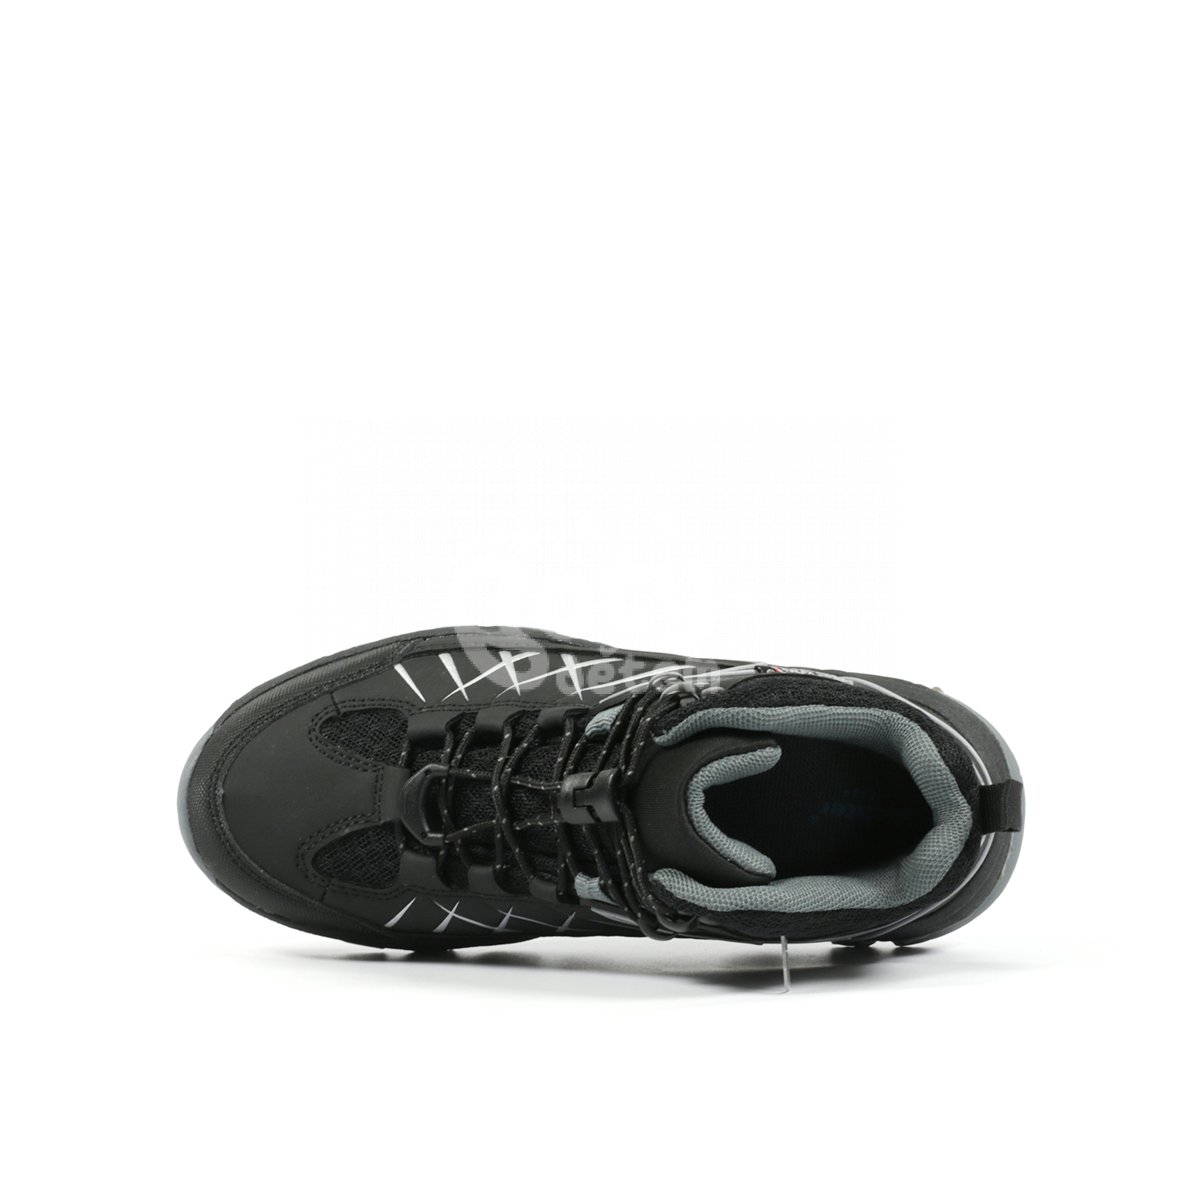 Sportovní obuv Richter 7880-4191-9901 černá